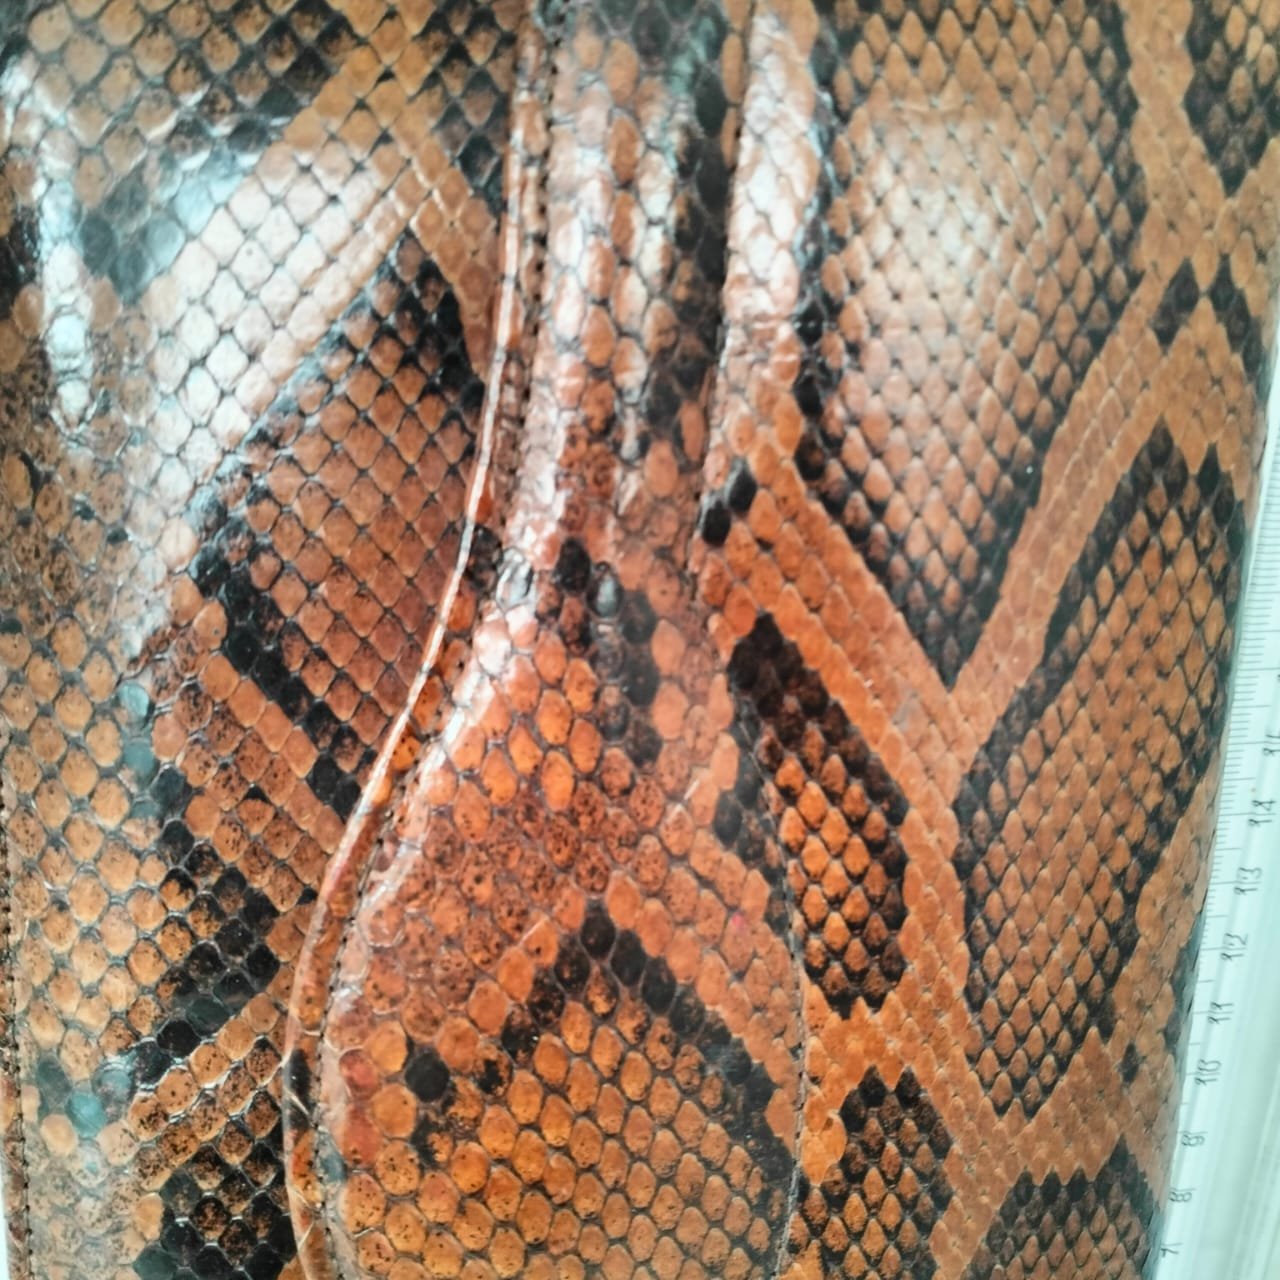 Snake Skin Leather Shoulder Bag